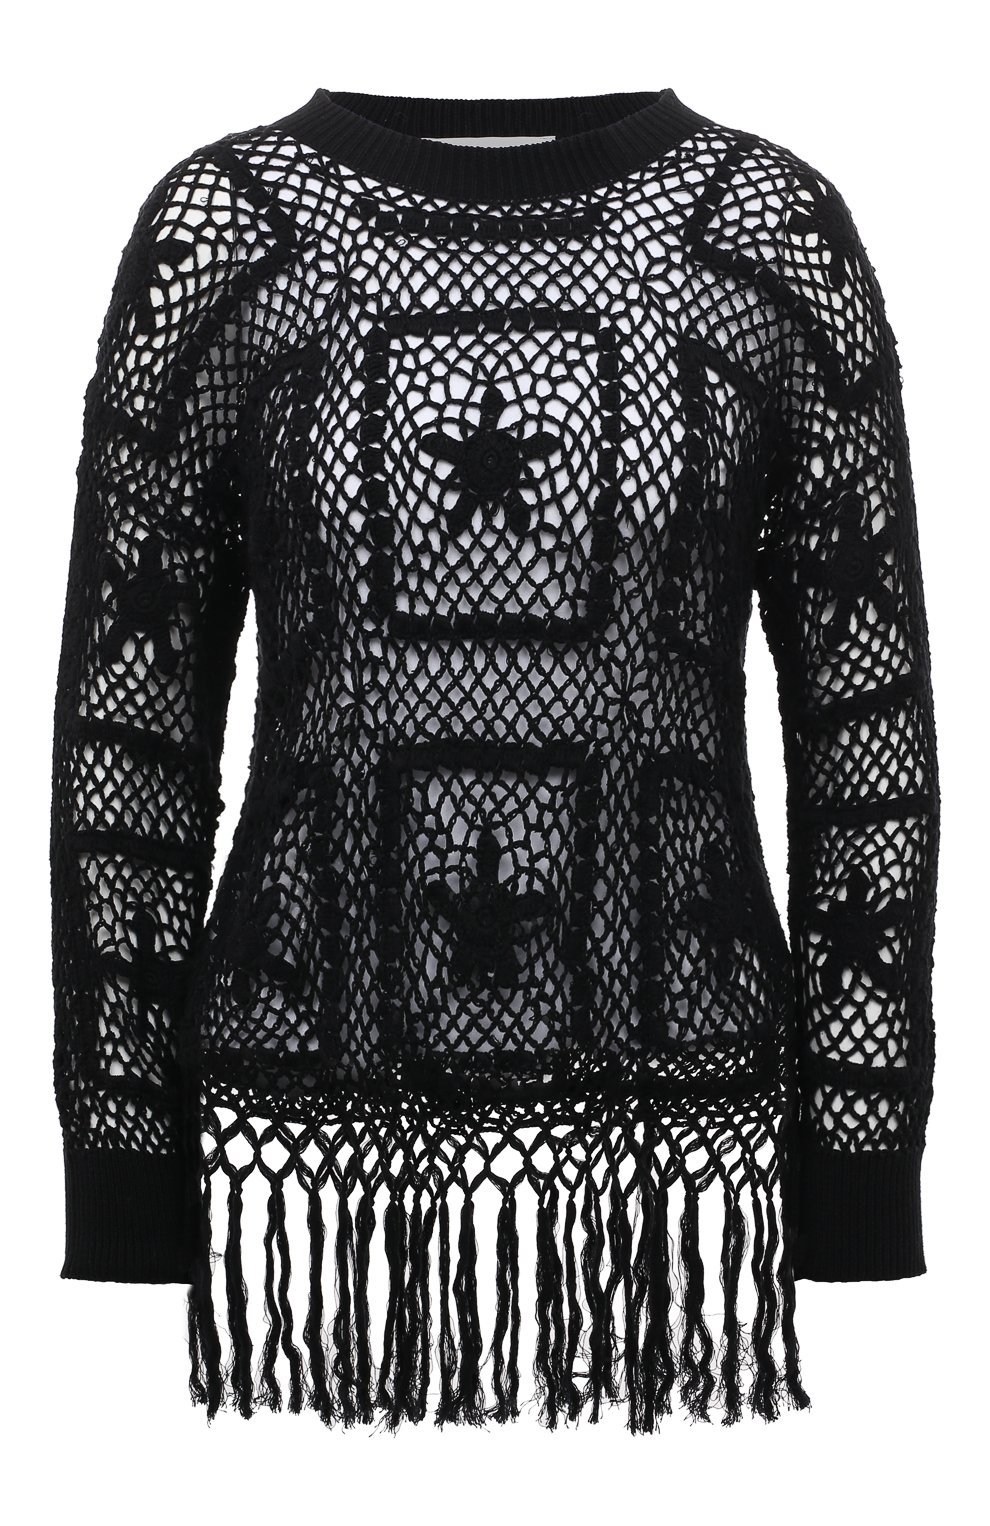 Топы Wildfox, Пуловер крупной вязки с круглым вырезом и бахромой Wildfox, США, Чёрный, Хлопок: 100%;, 1893121  - купить